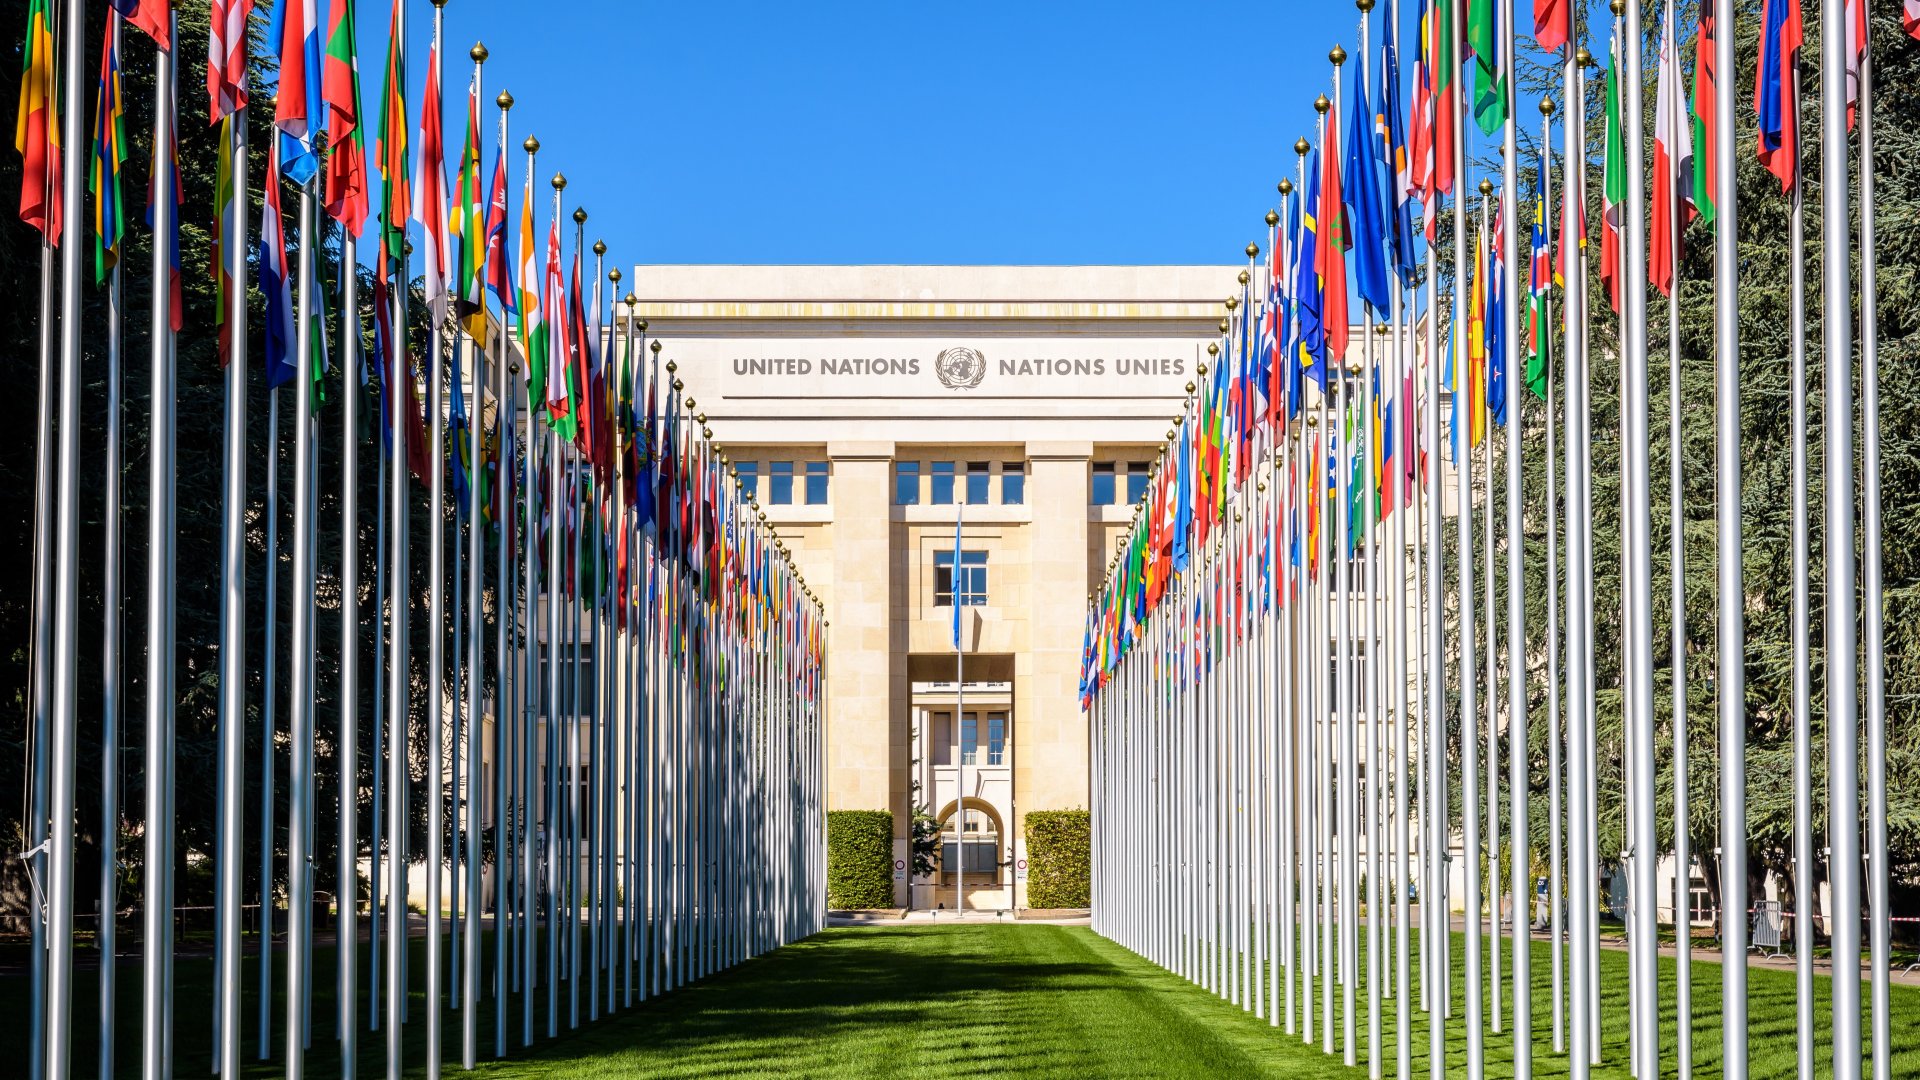 Ufficio delle Nazioni Unite